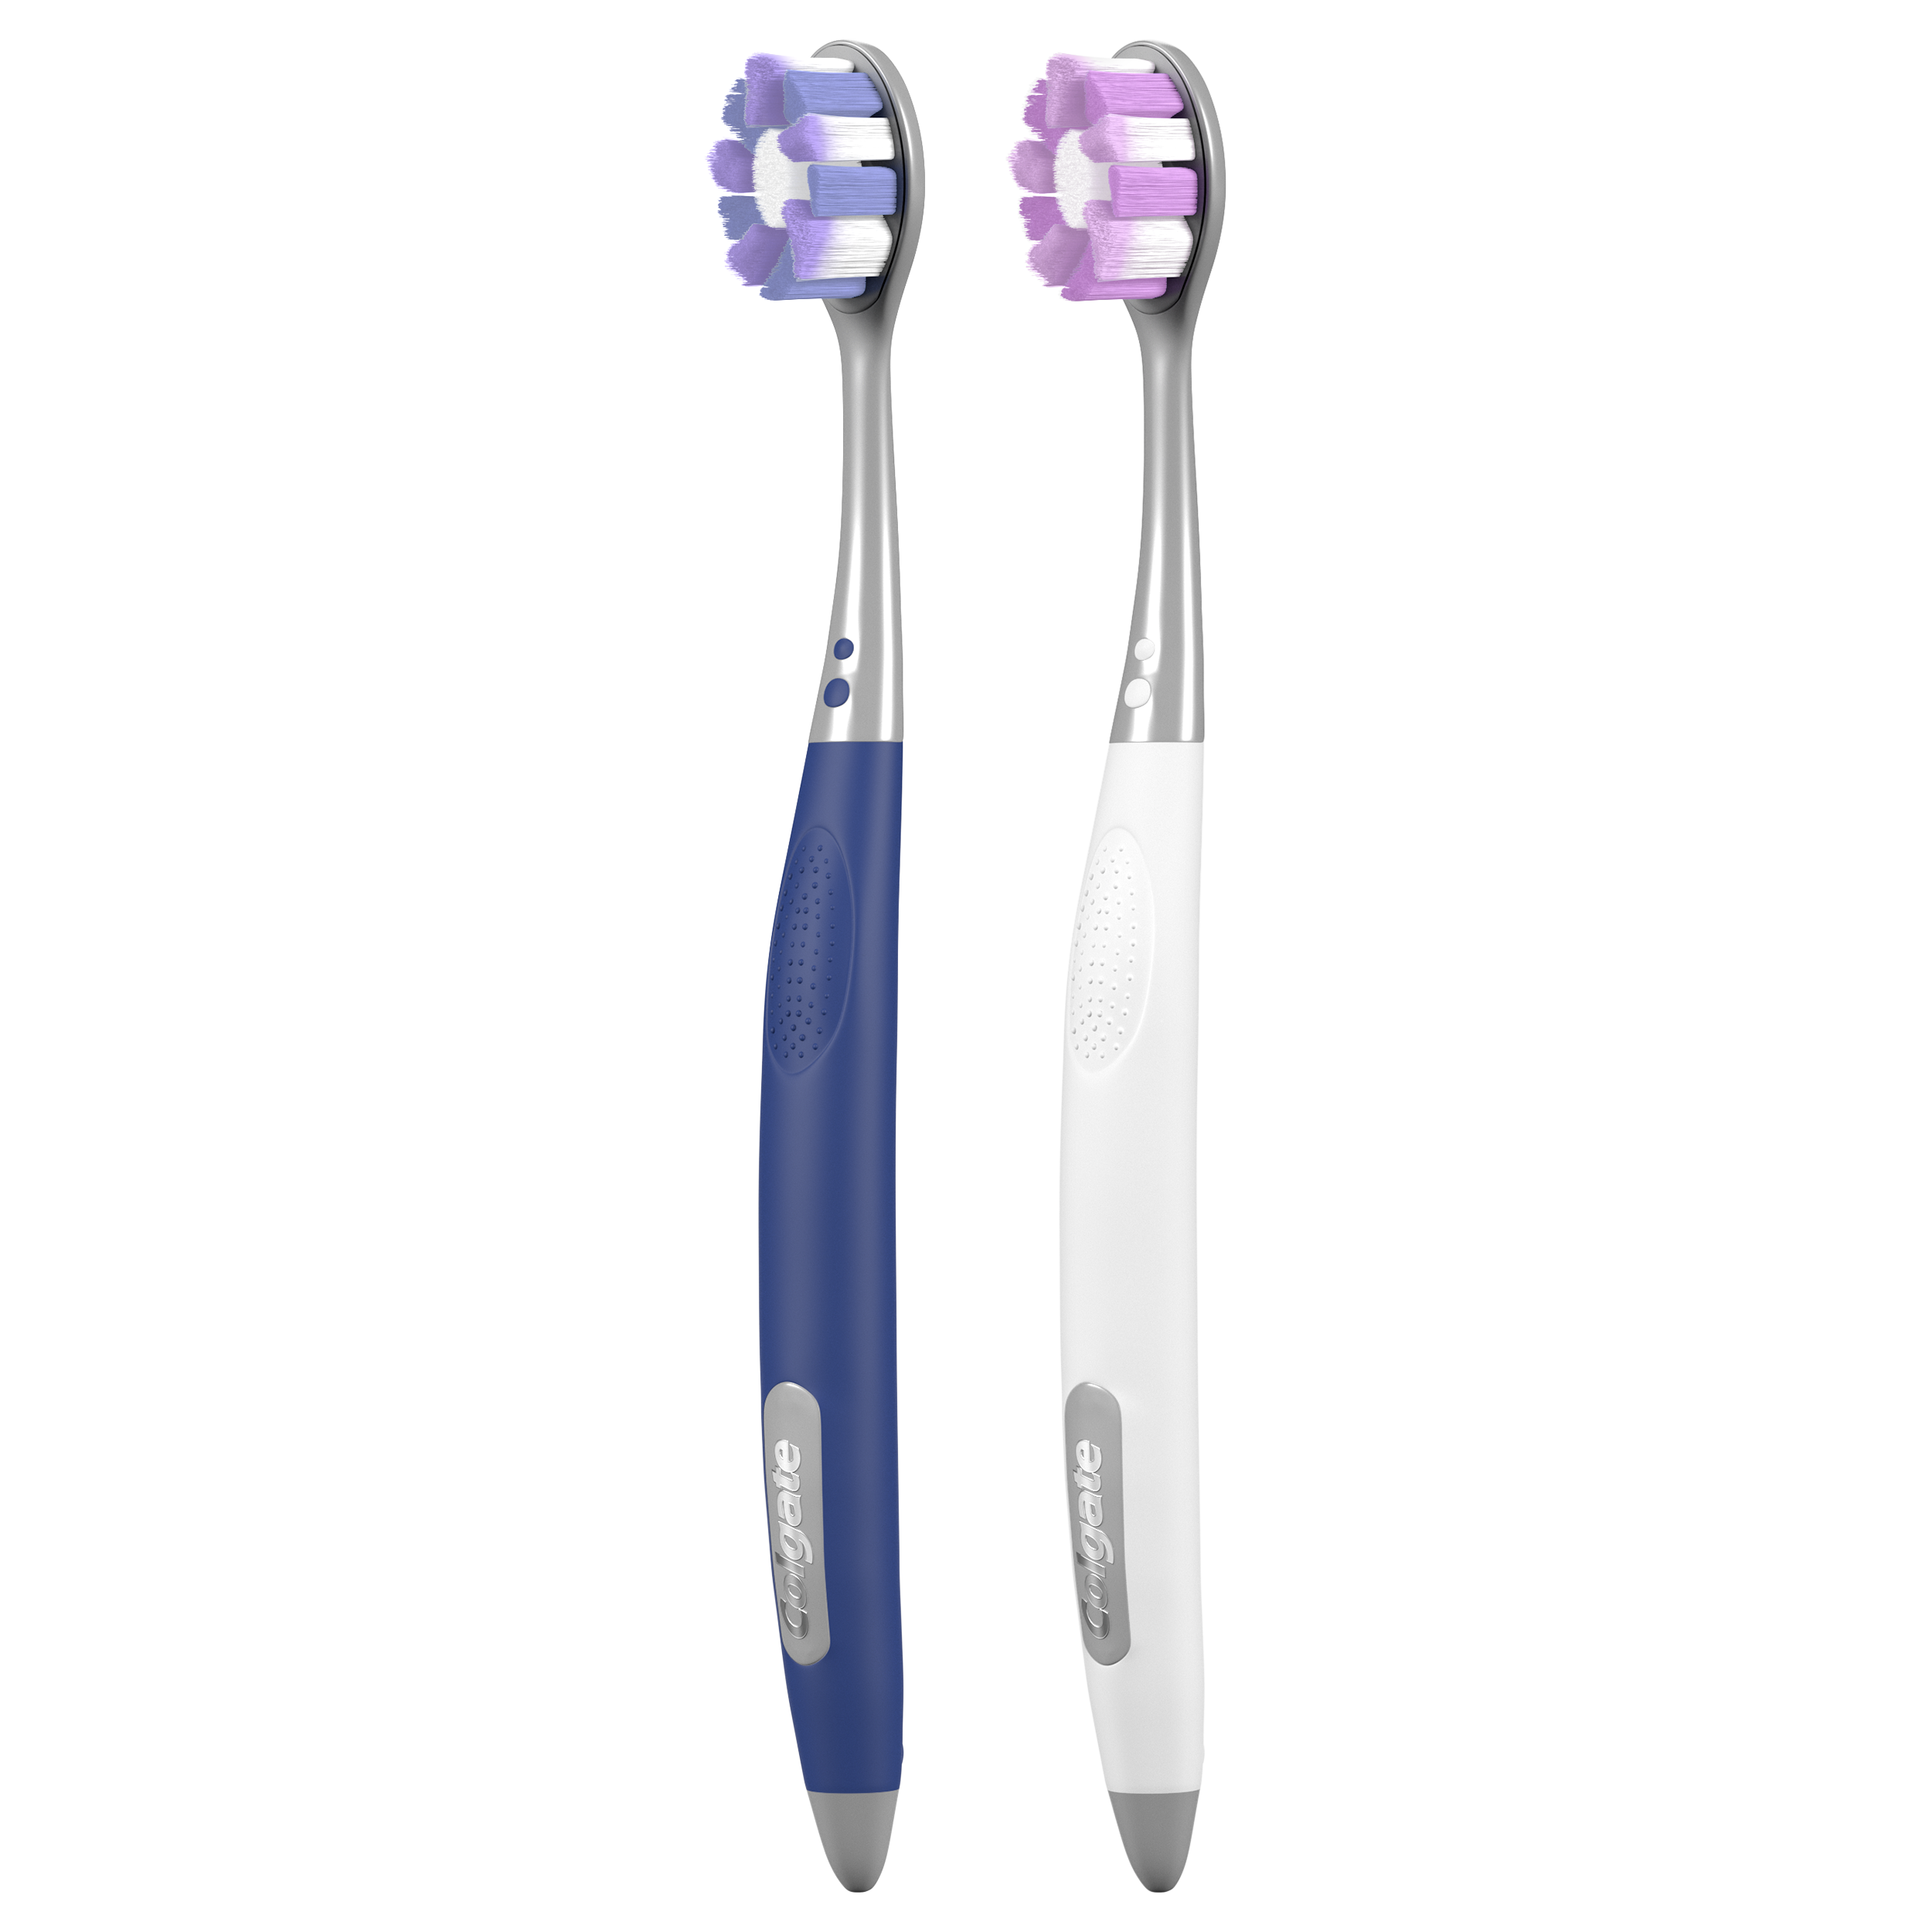 Packshot of Colgate® Renewal Toothbrush